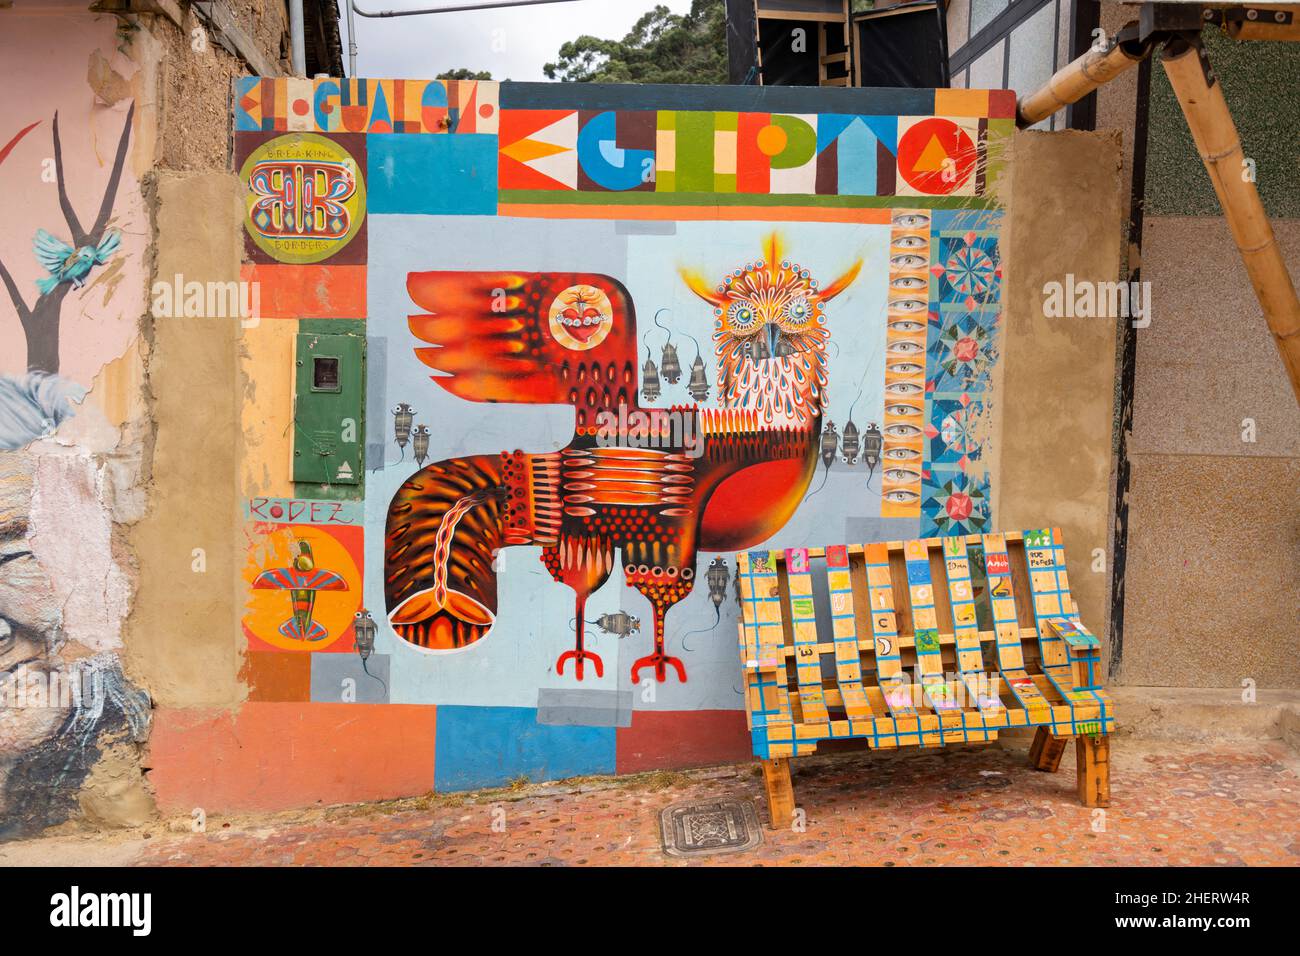 Street Wall Art von ehemaligen Bandenmitgliedern im einst berüchtigten Barrio Egipto, Bogota, Kolumbien. Organisierte Wandertouren sind möglich. Stockfoto